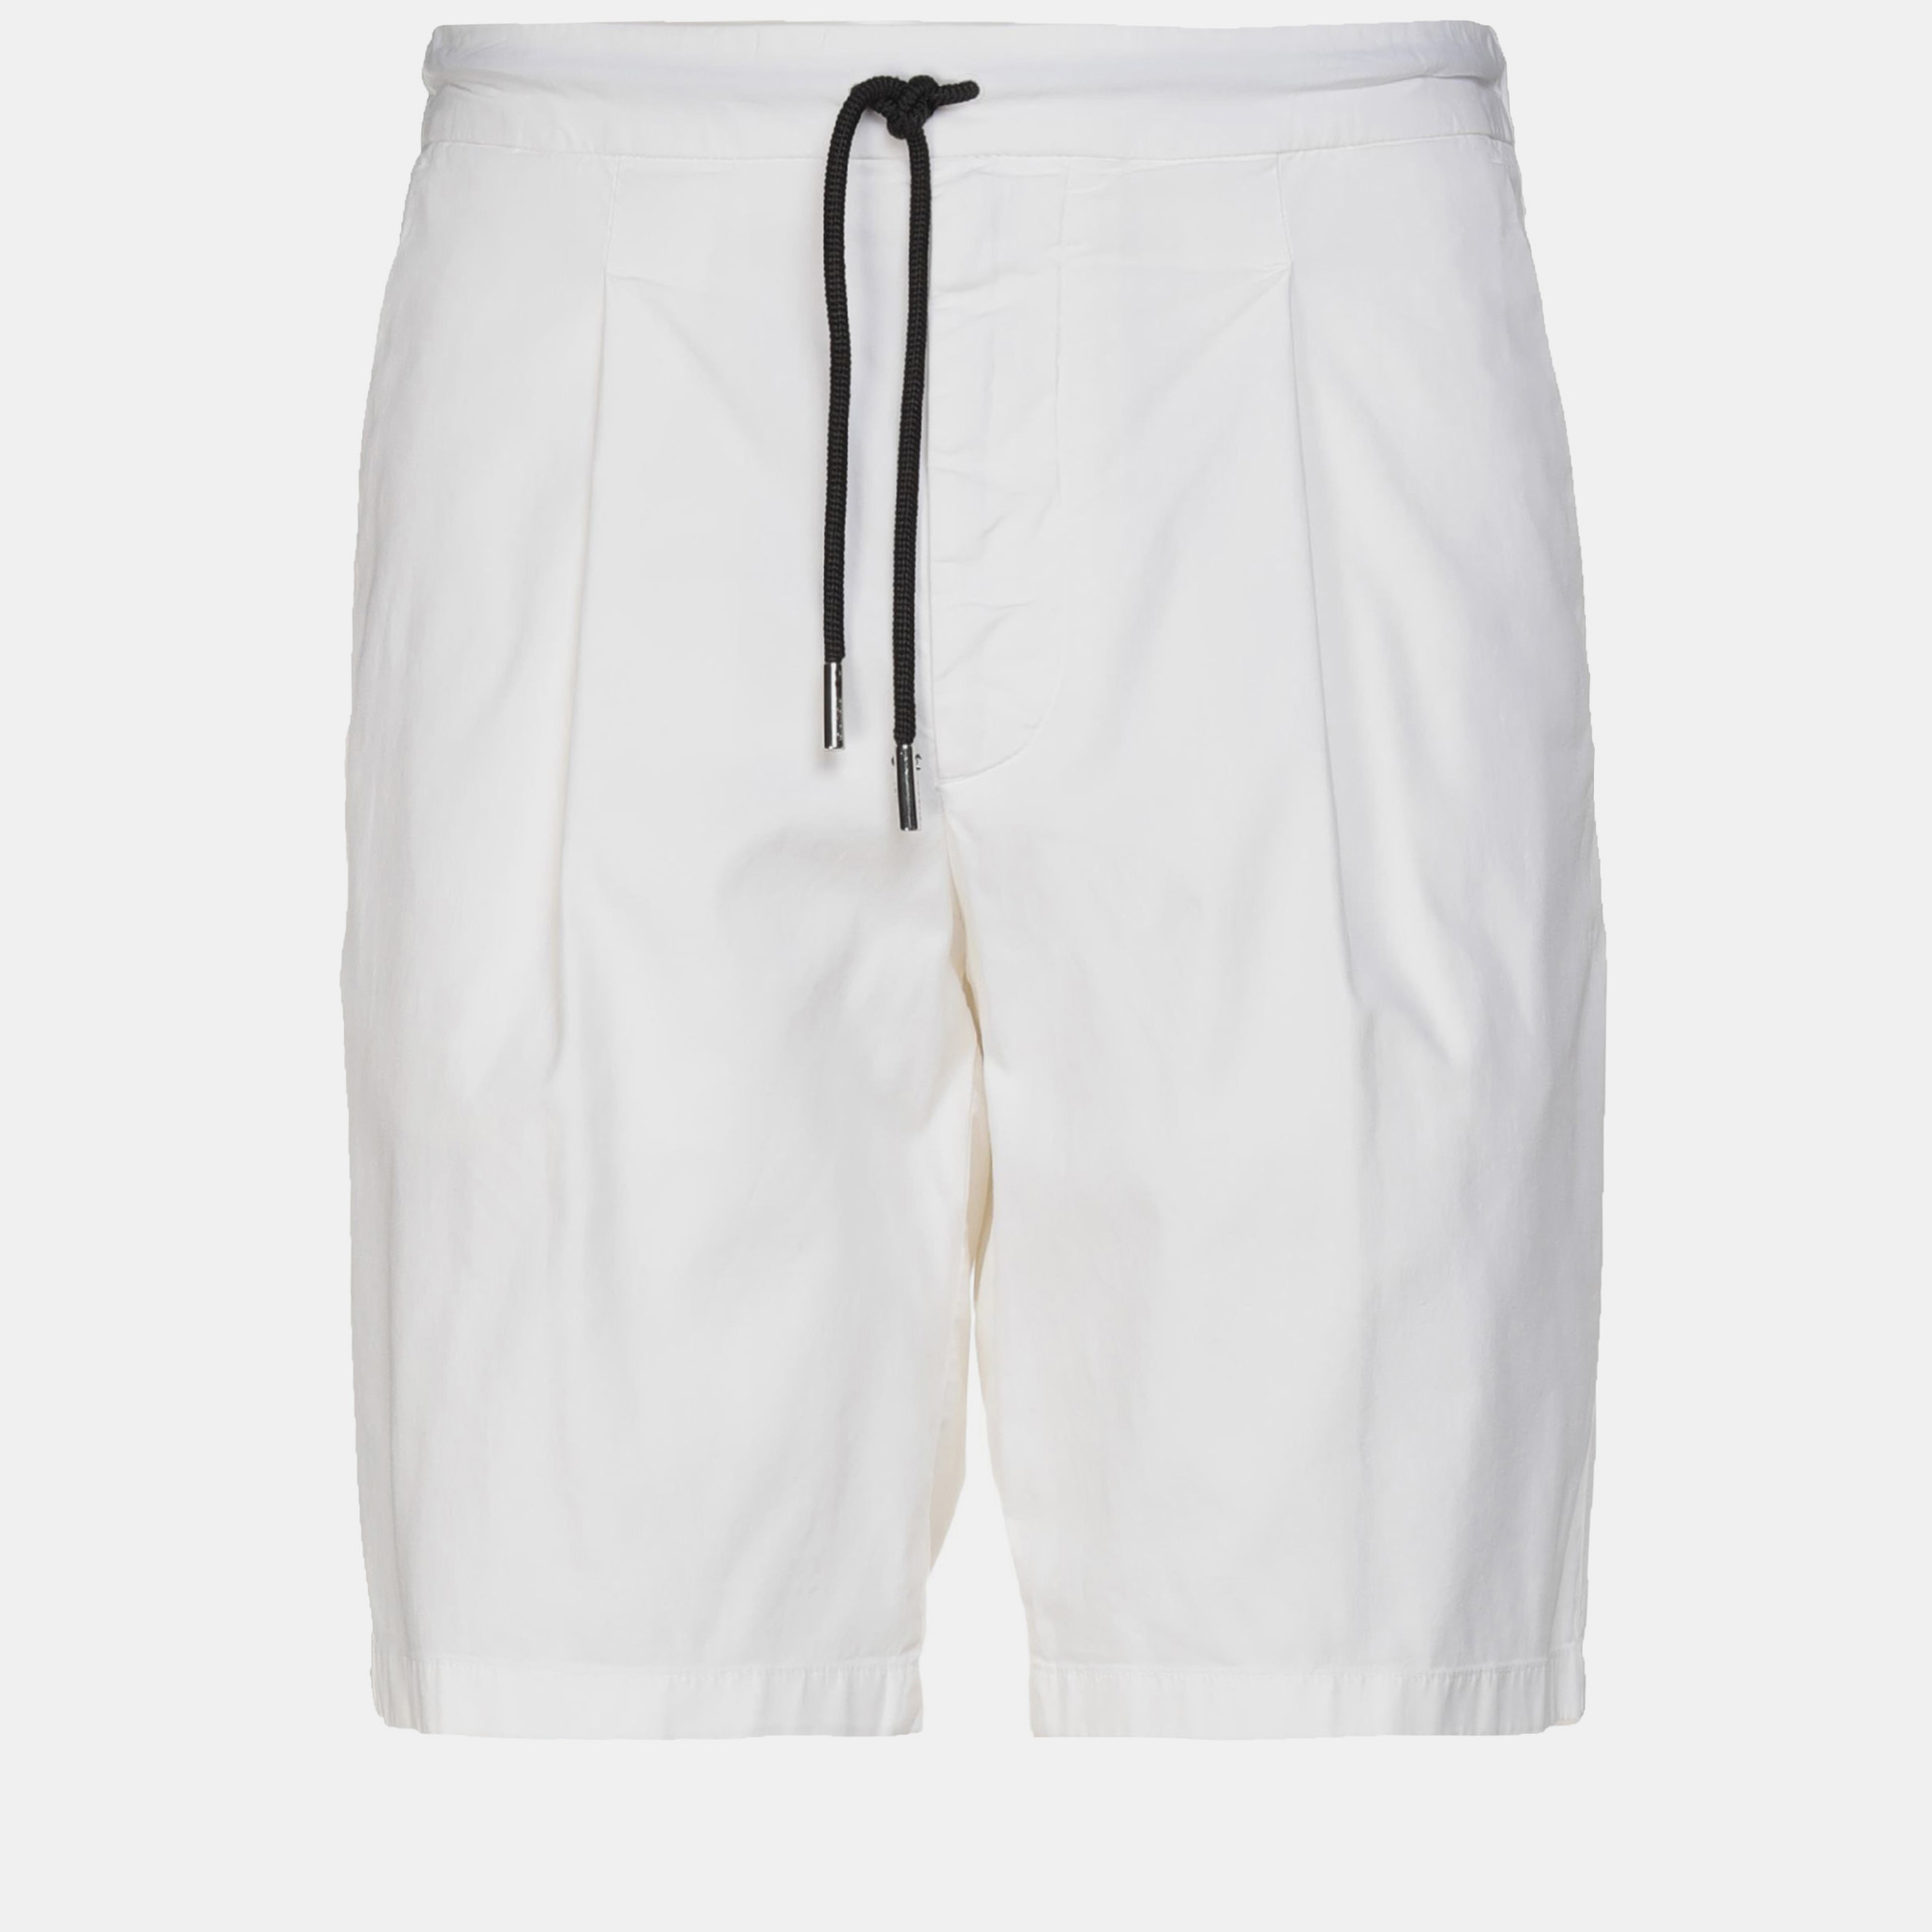 Pre-owned Giorgio Armani White Cotton Drawstring Shorts L (it 50)